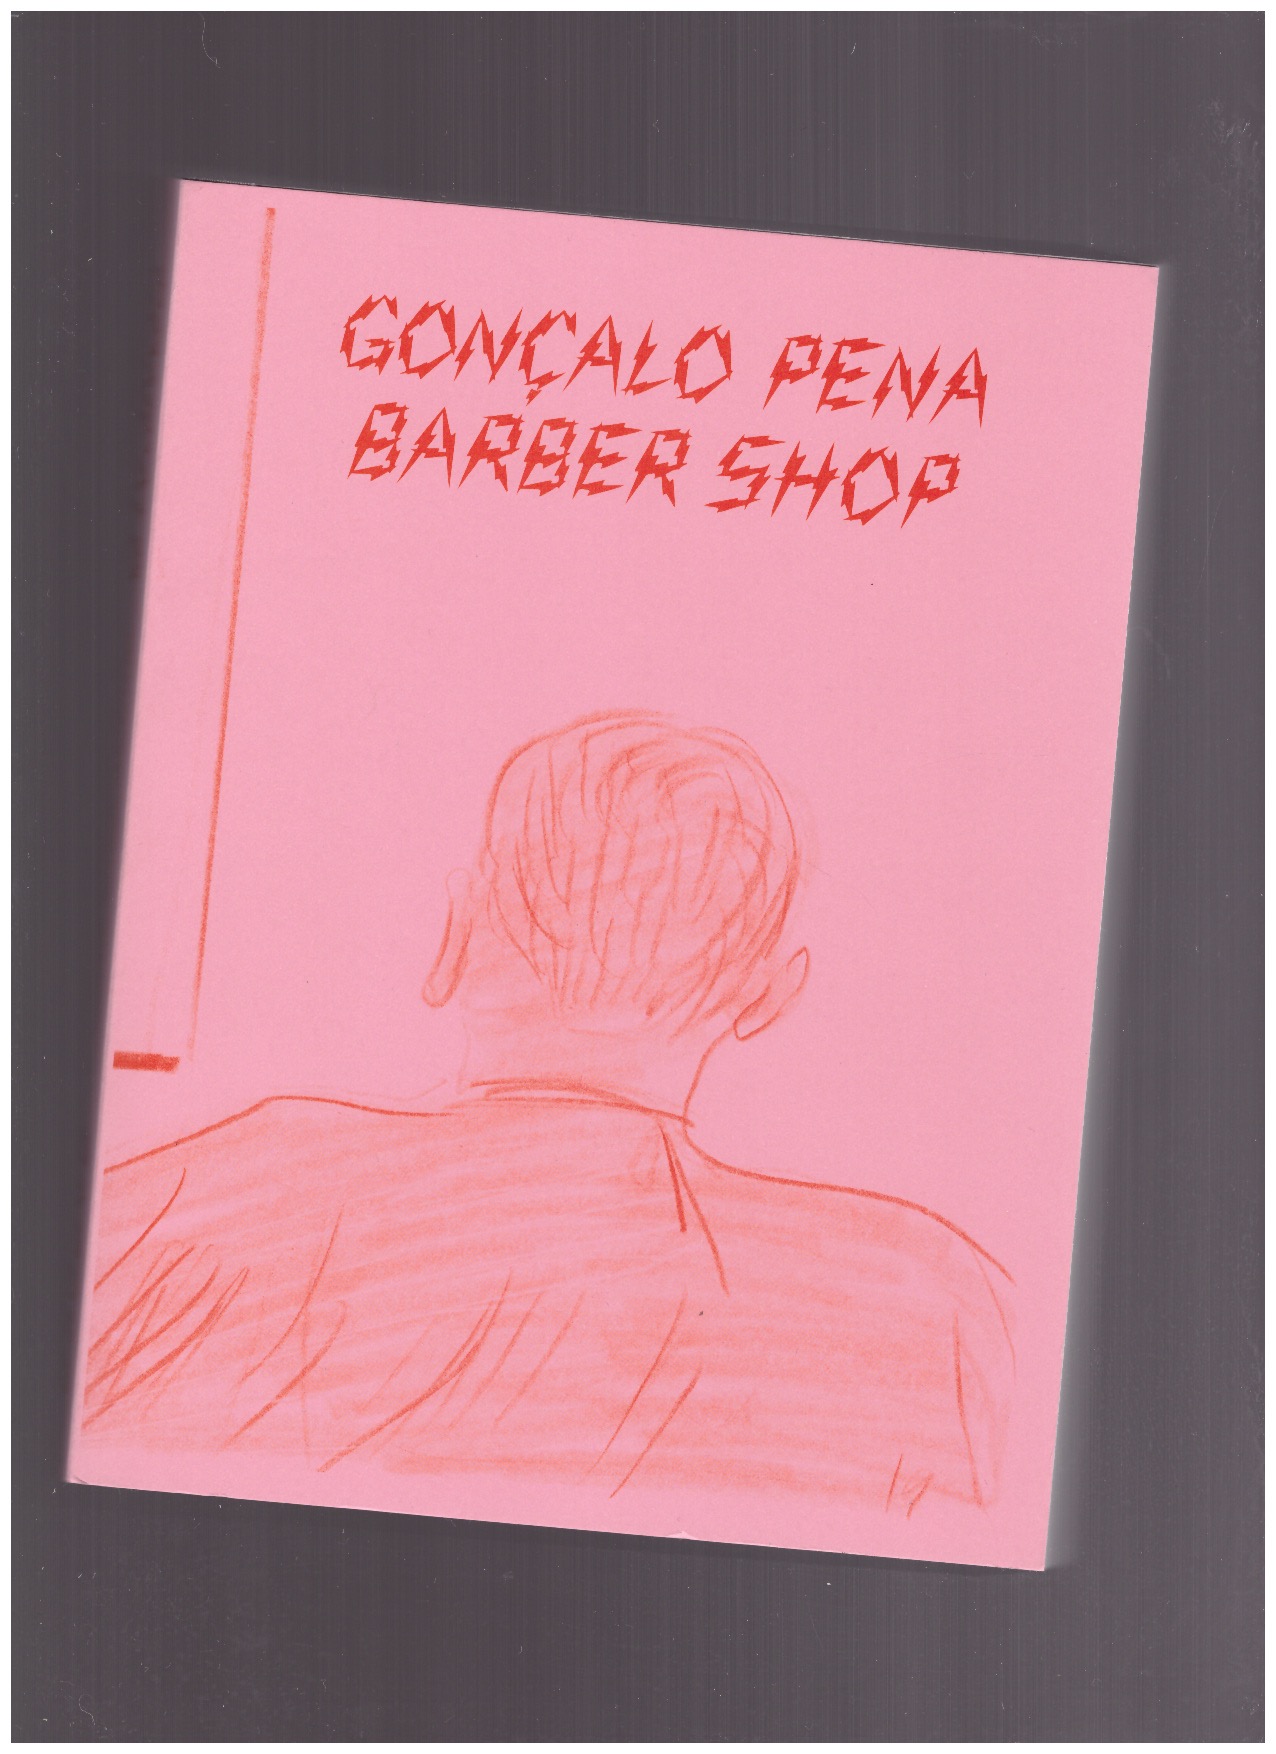 PENA, Gonçalo - Barber Shop